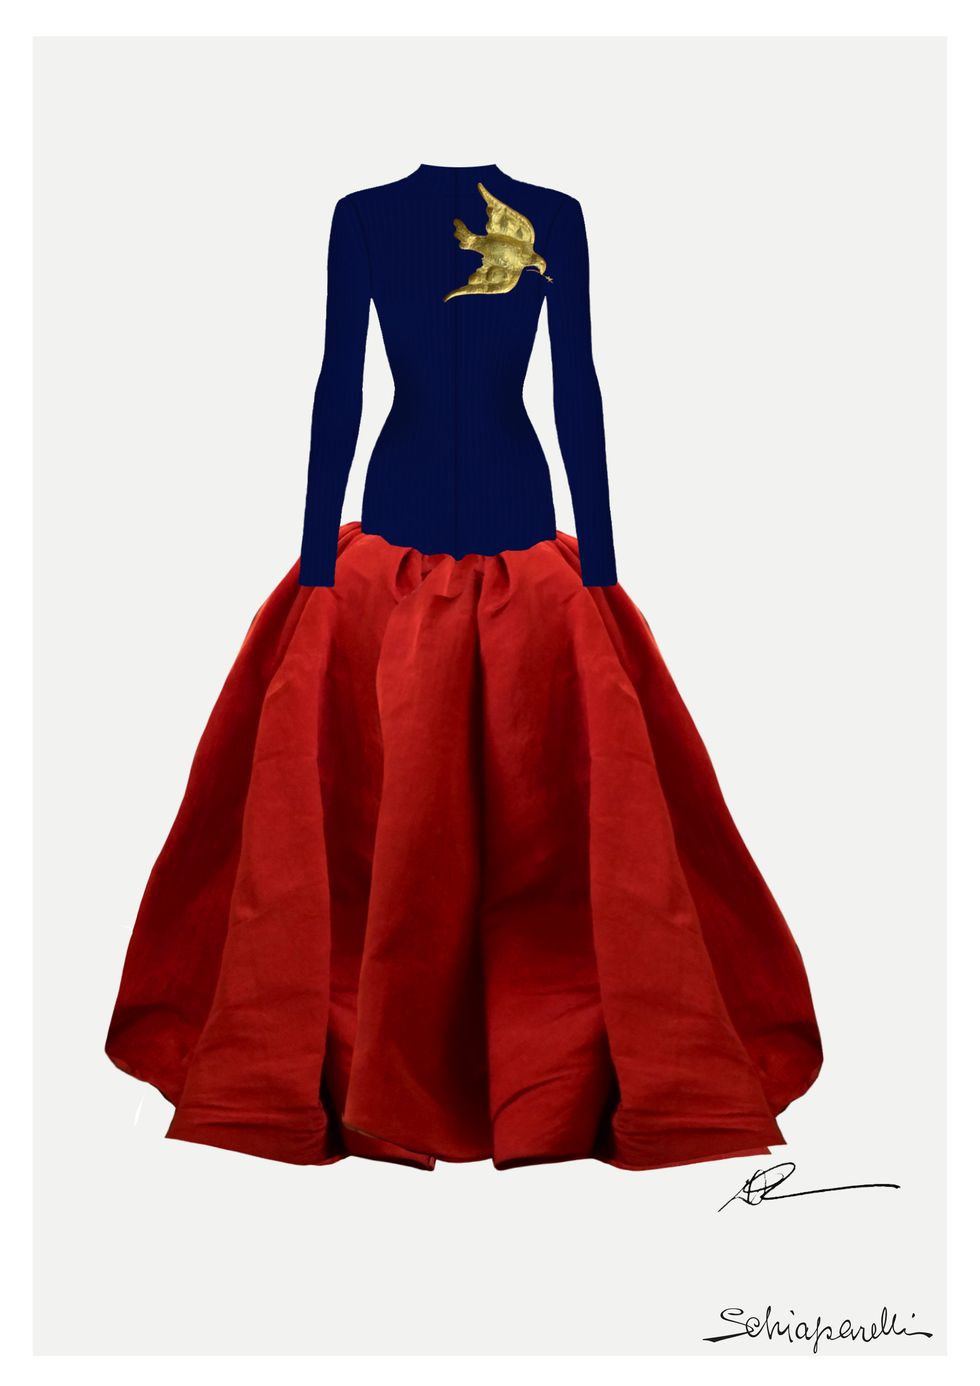 lady gaga ha indossato una creazione schiaparelli custom haute couture, in occasione della sua performance alla cerimonia inaugurale di insediamento del presidente eletto degli stati uniti d’america joe biden, gennaio 2021